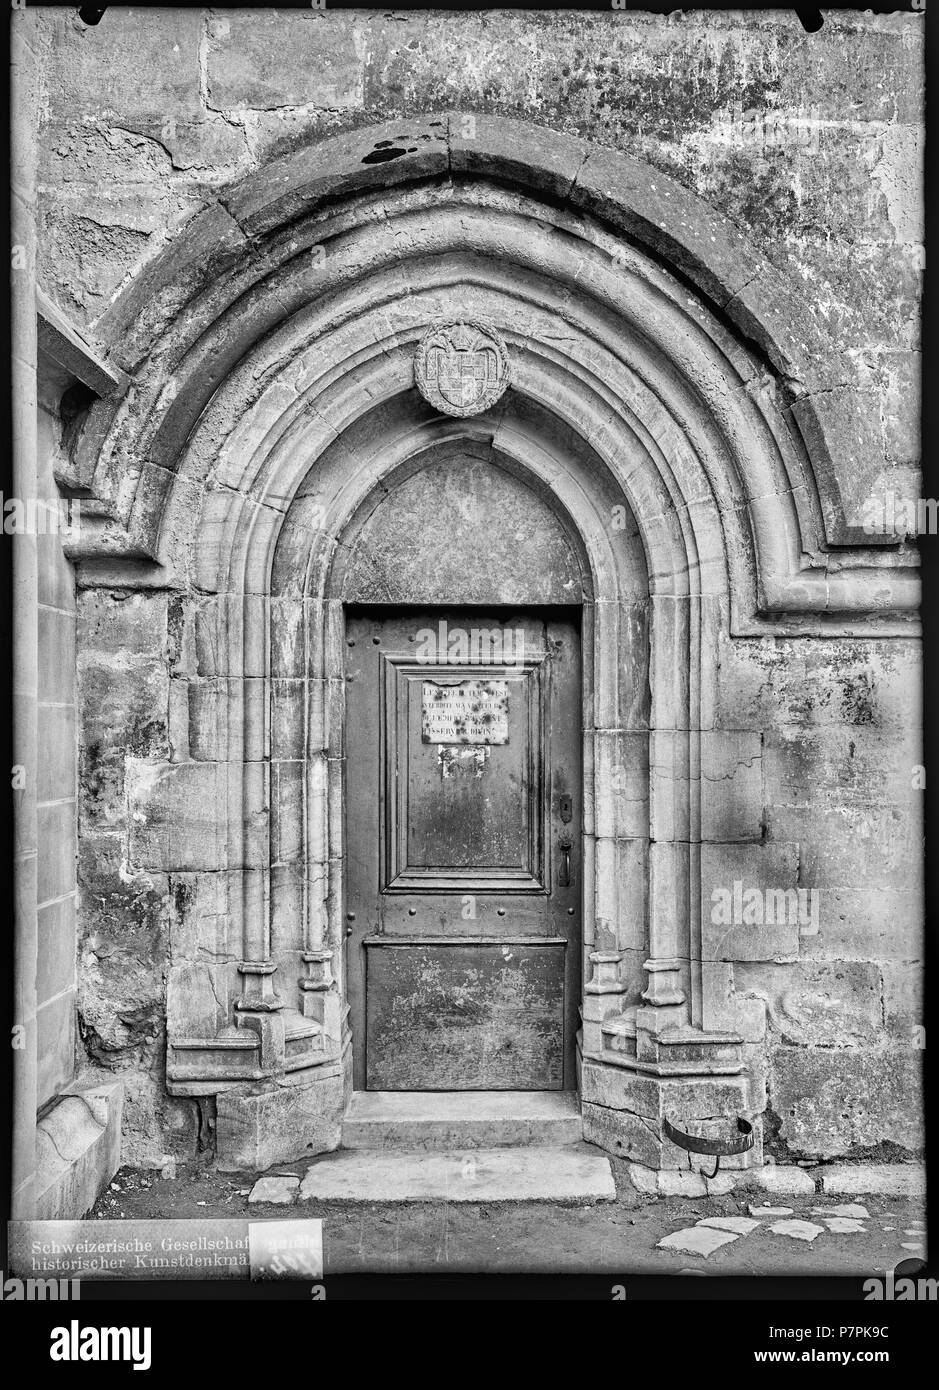 74 CH-NB - Lausanne, Cathédrale protestante Notre-Dame, vue partielle extérieure - Collection Max van Berchem - EAD-7289 Stock Photo